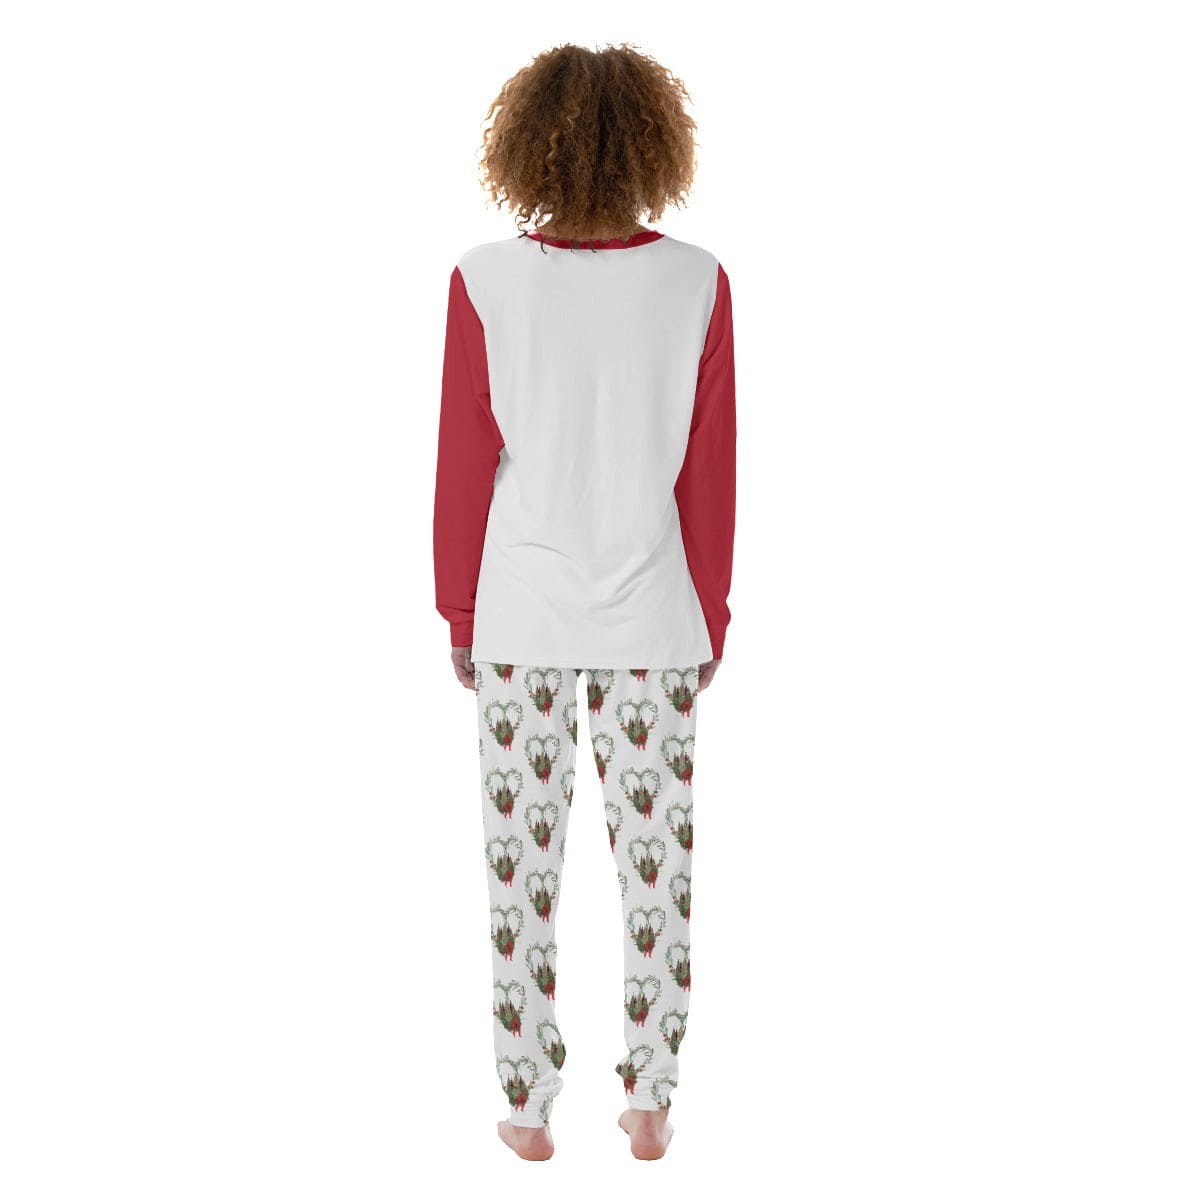 Women's Christmas Pajamas 2 pc Set - S-XL